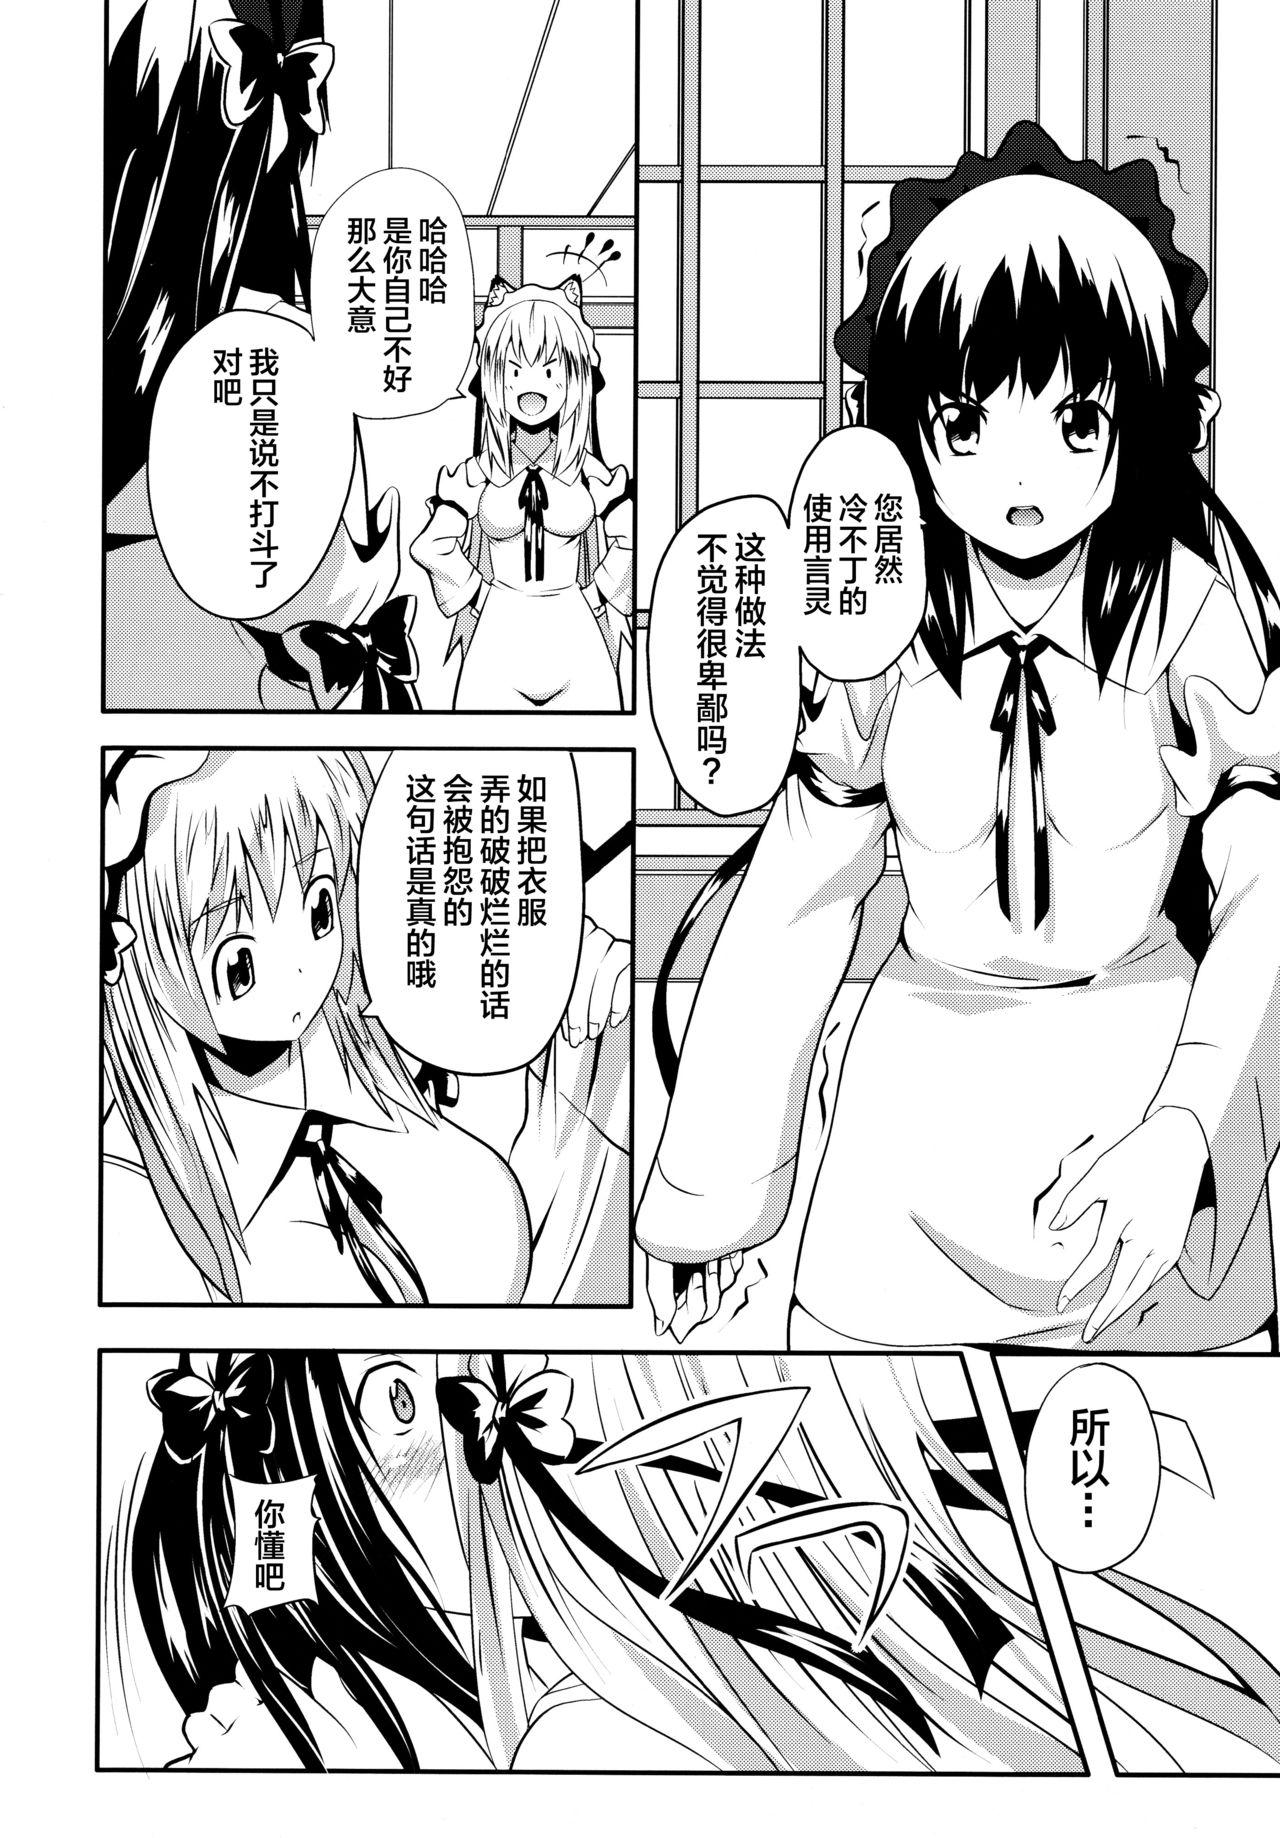 Leather Hare, Tokidoki Oinari-sama 4 - Wagaya no oinari sama Milfsex - Page 10